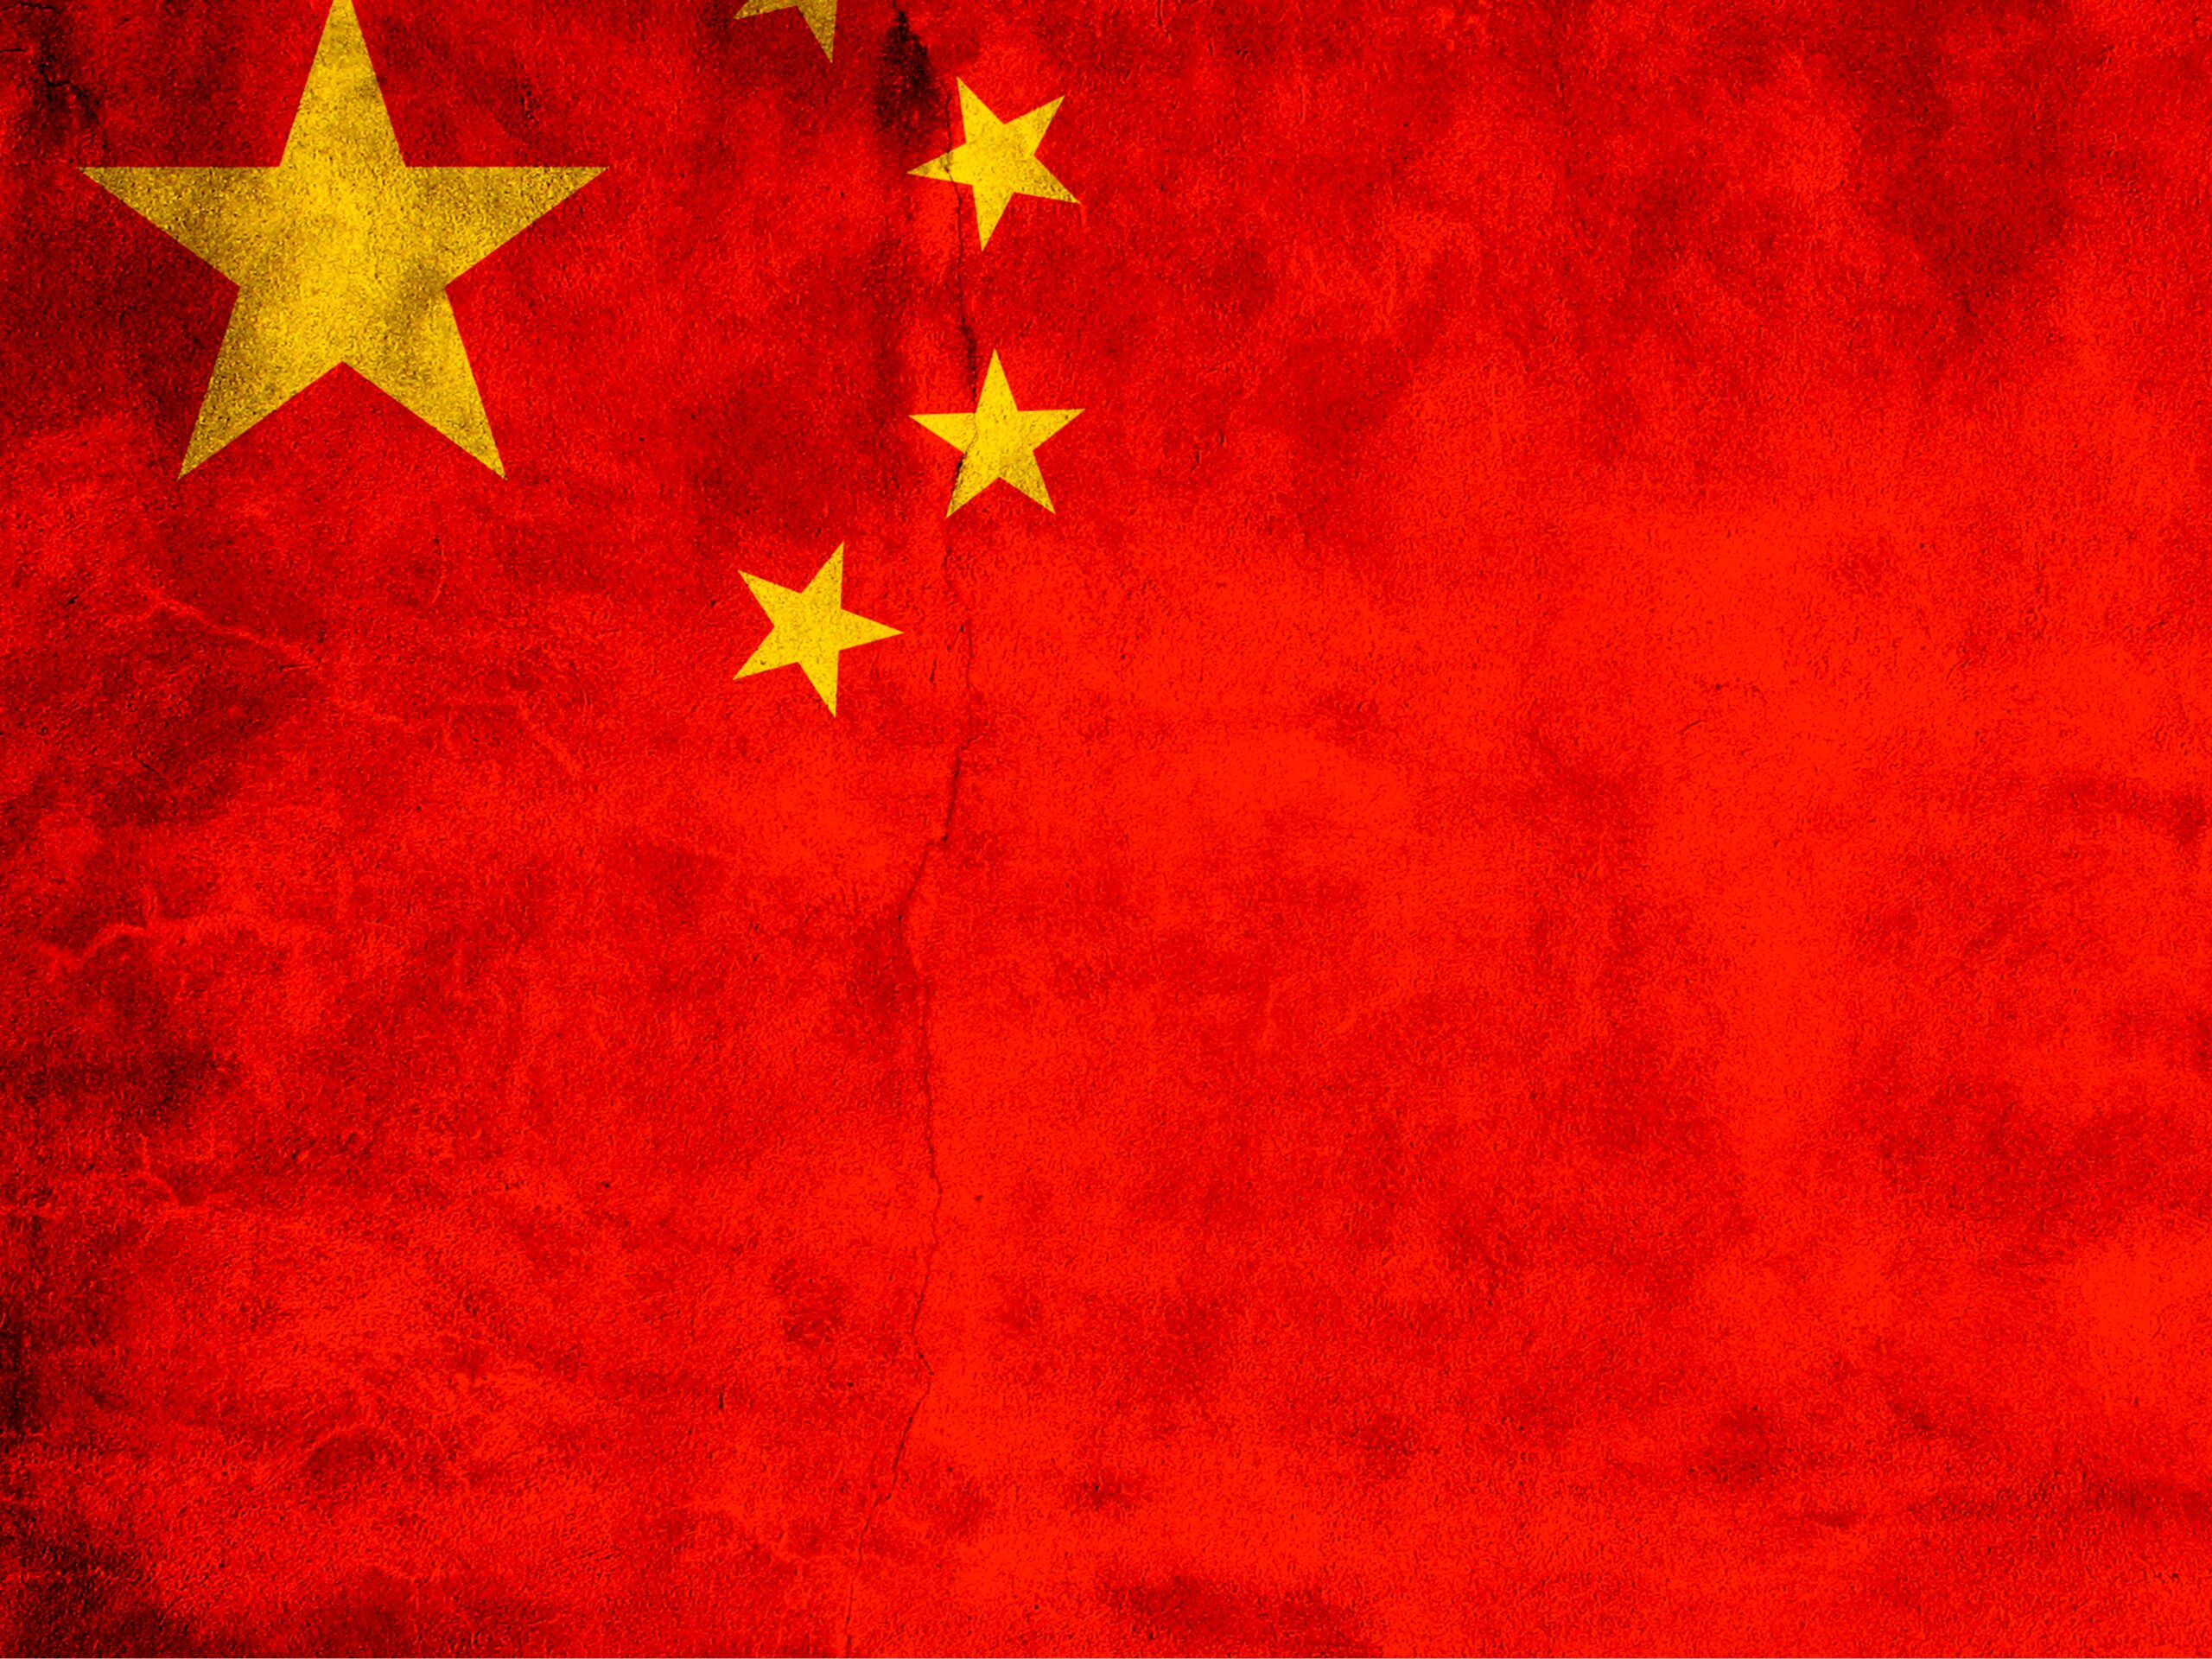 Imagem ilustrativa referente à bandeira da China